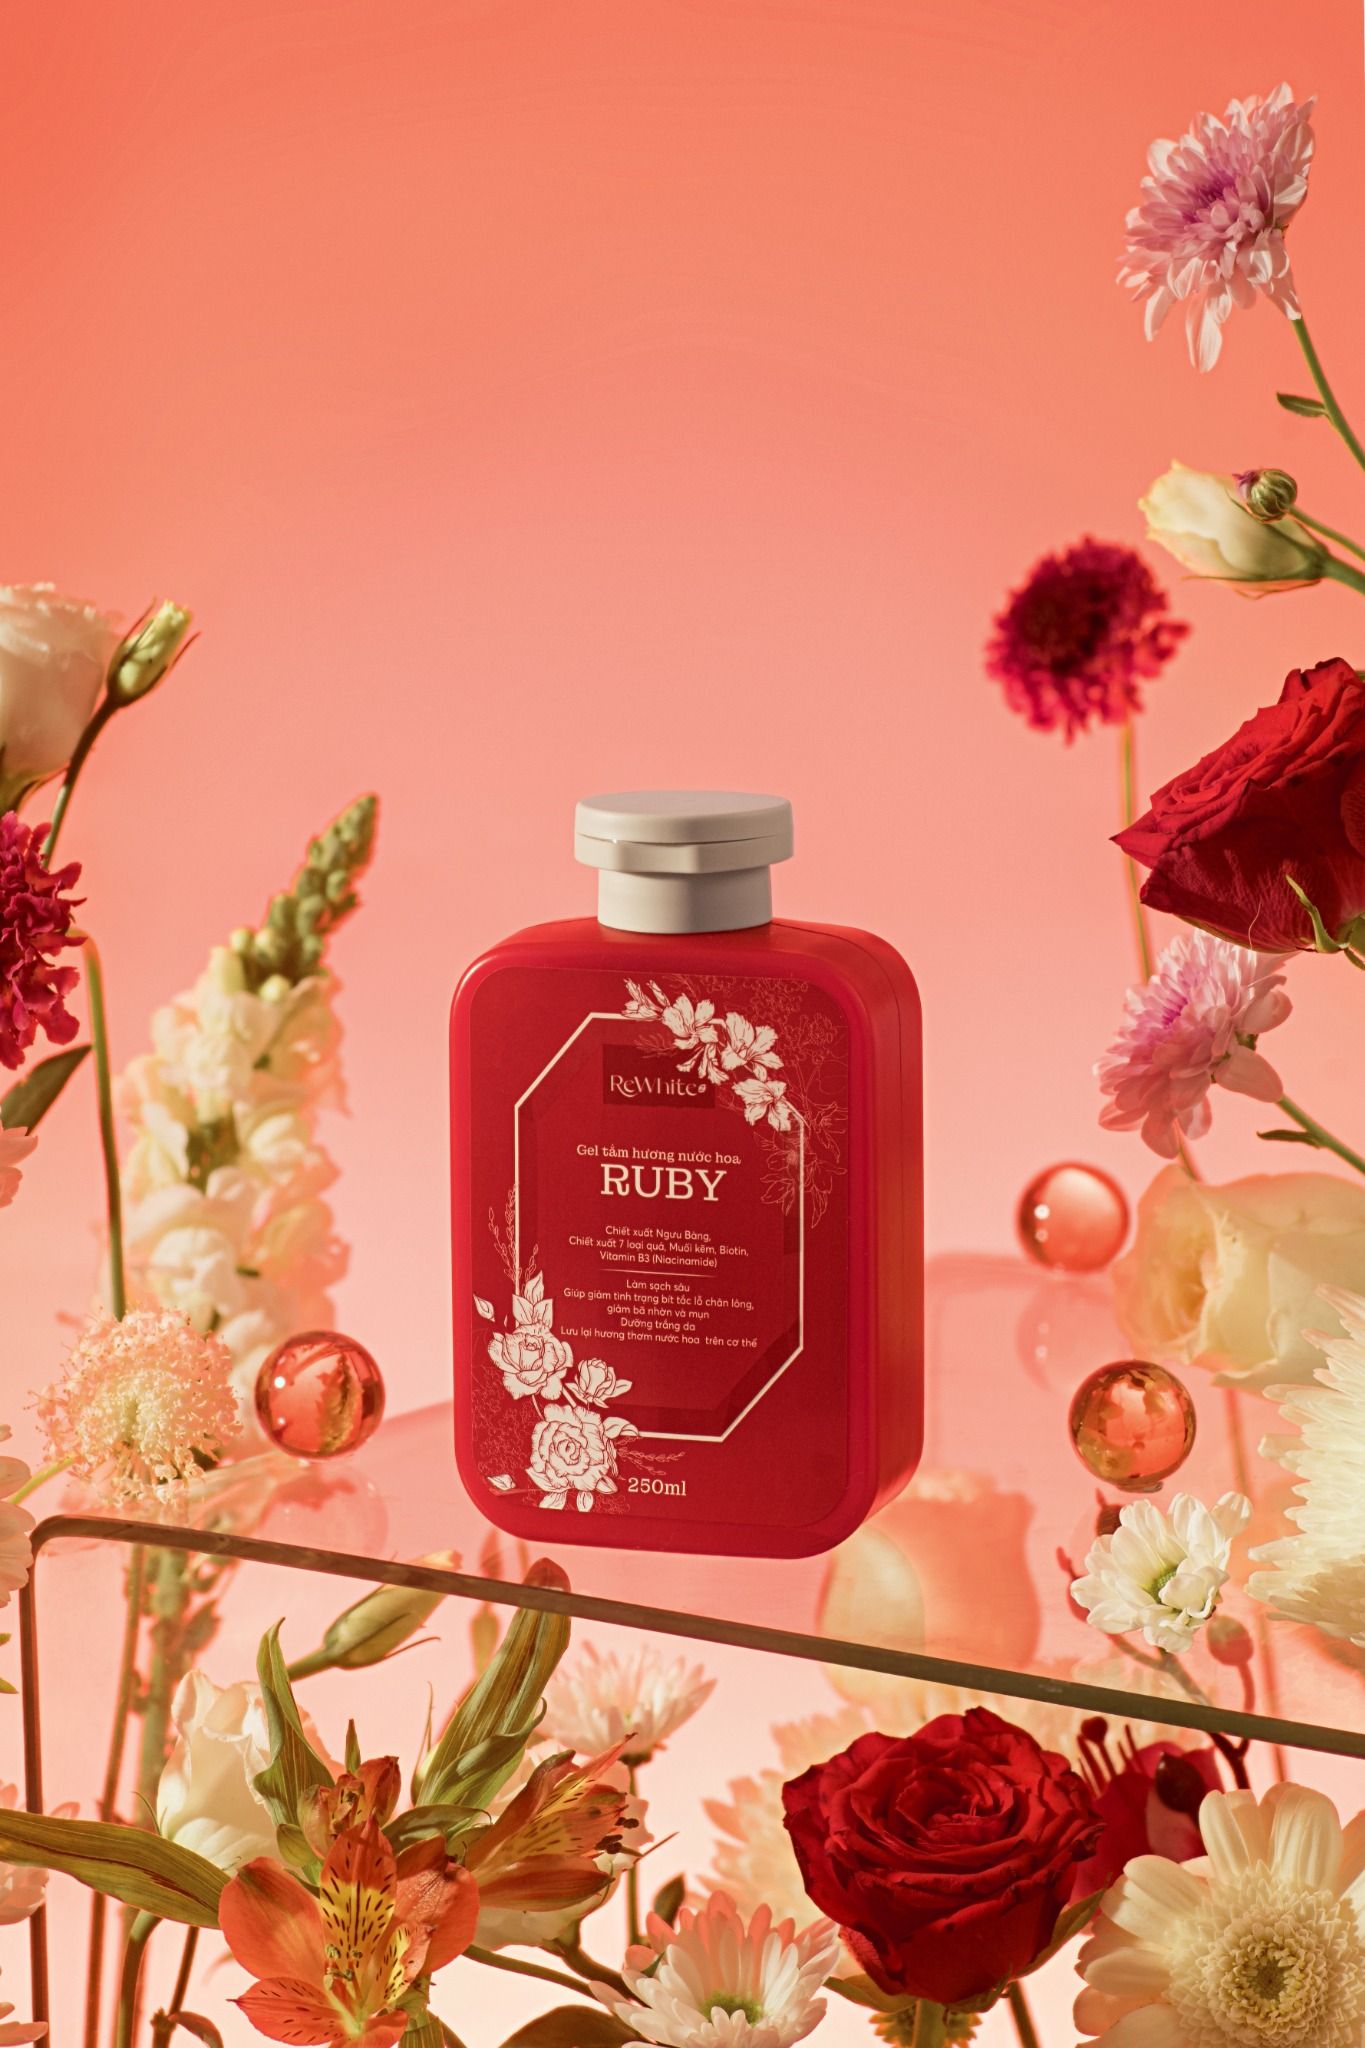 Rewhitez Gel tắm hương nước hoa Ruby – Làm sạch tối ưu, an toàn với mọi vùng da, kể cả vùng nhạy cảm, hộp 1 lọ 250ml